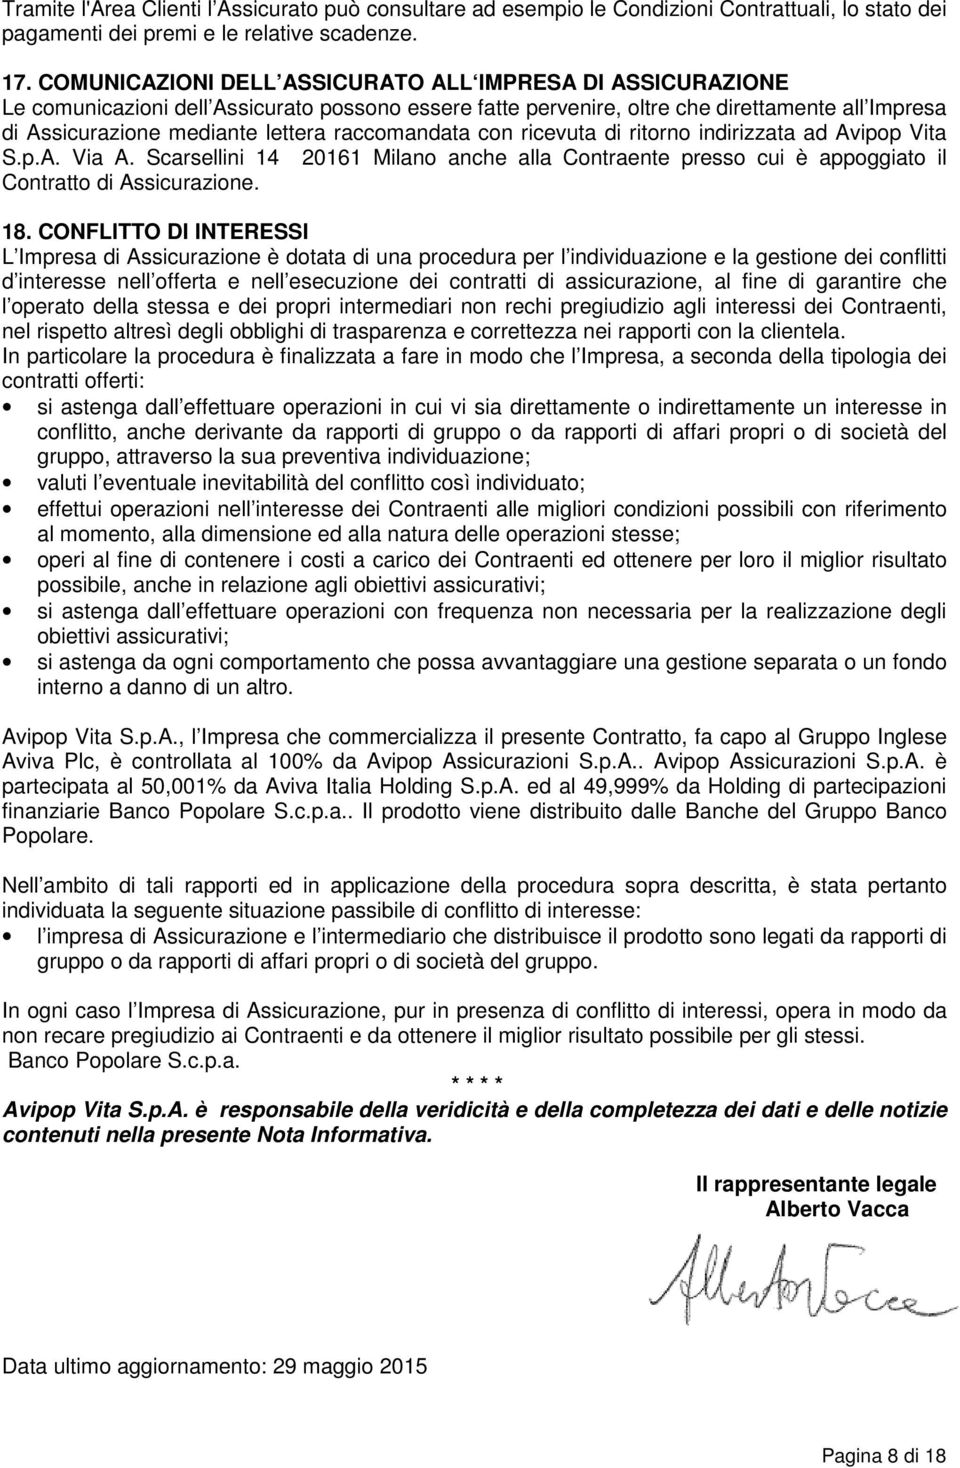 raccomandata con ricevuta di ritorno indirizzata ad Avipop Vita S.p.A. Via A. Scarsellini 14 20161 Milano anche alla Contraente presso cui è appoggiato il Contratto di Assicurazione. 18.